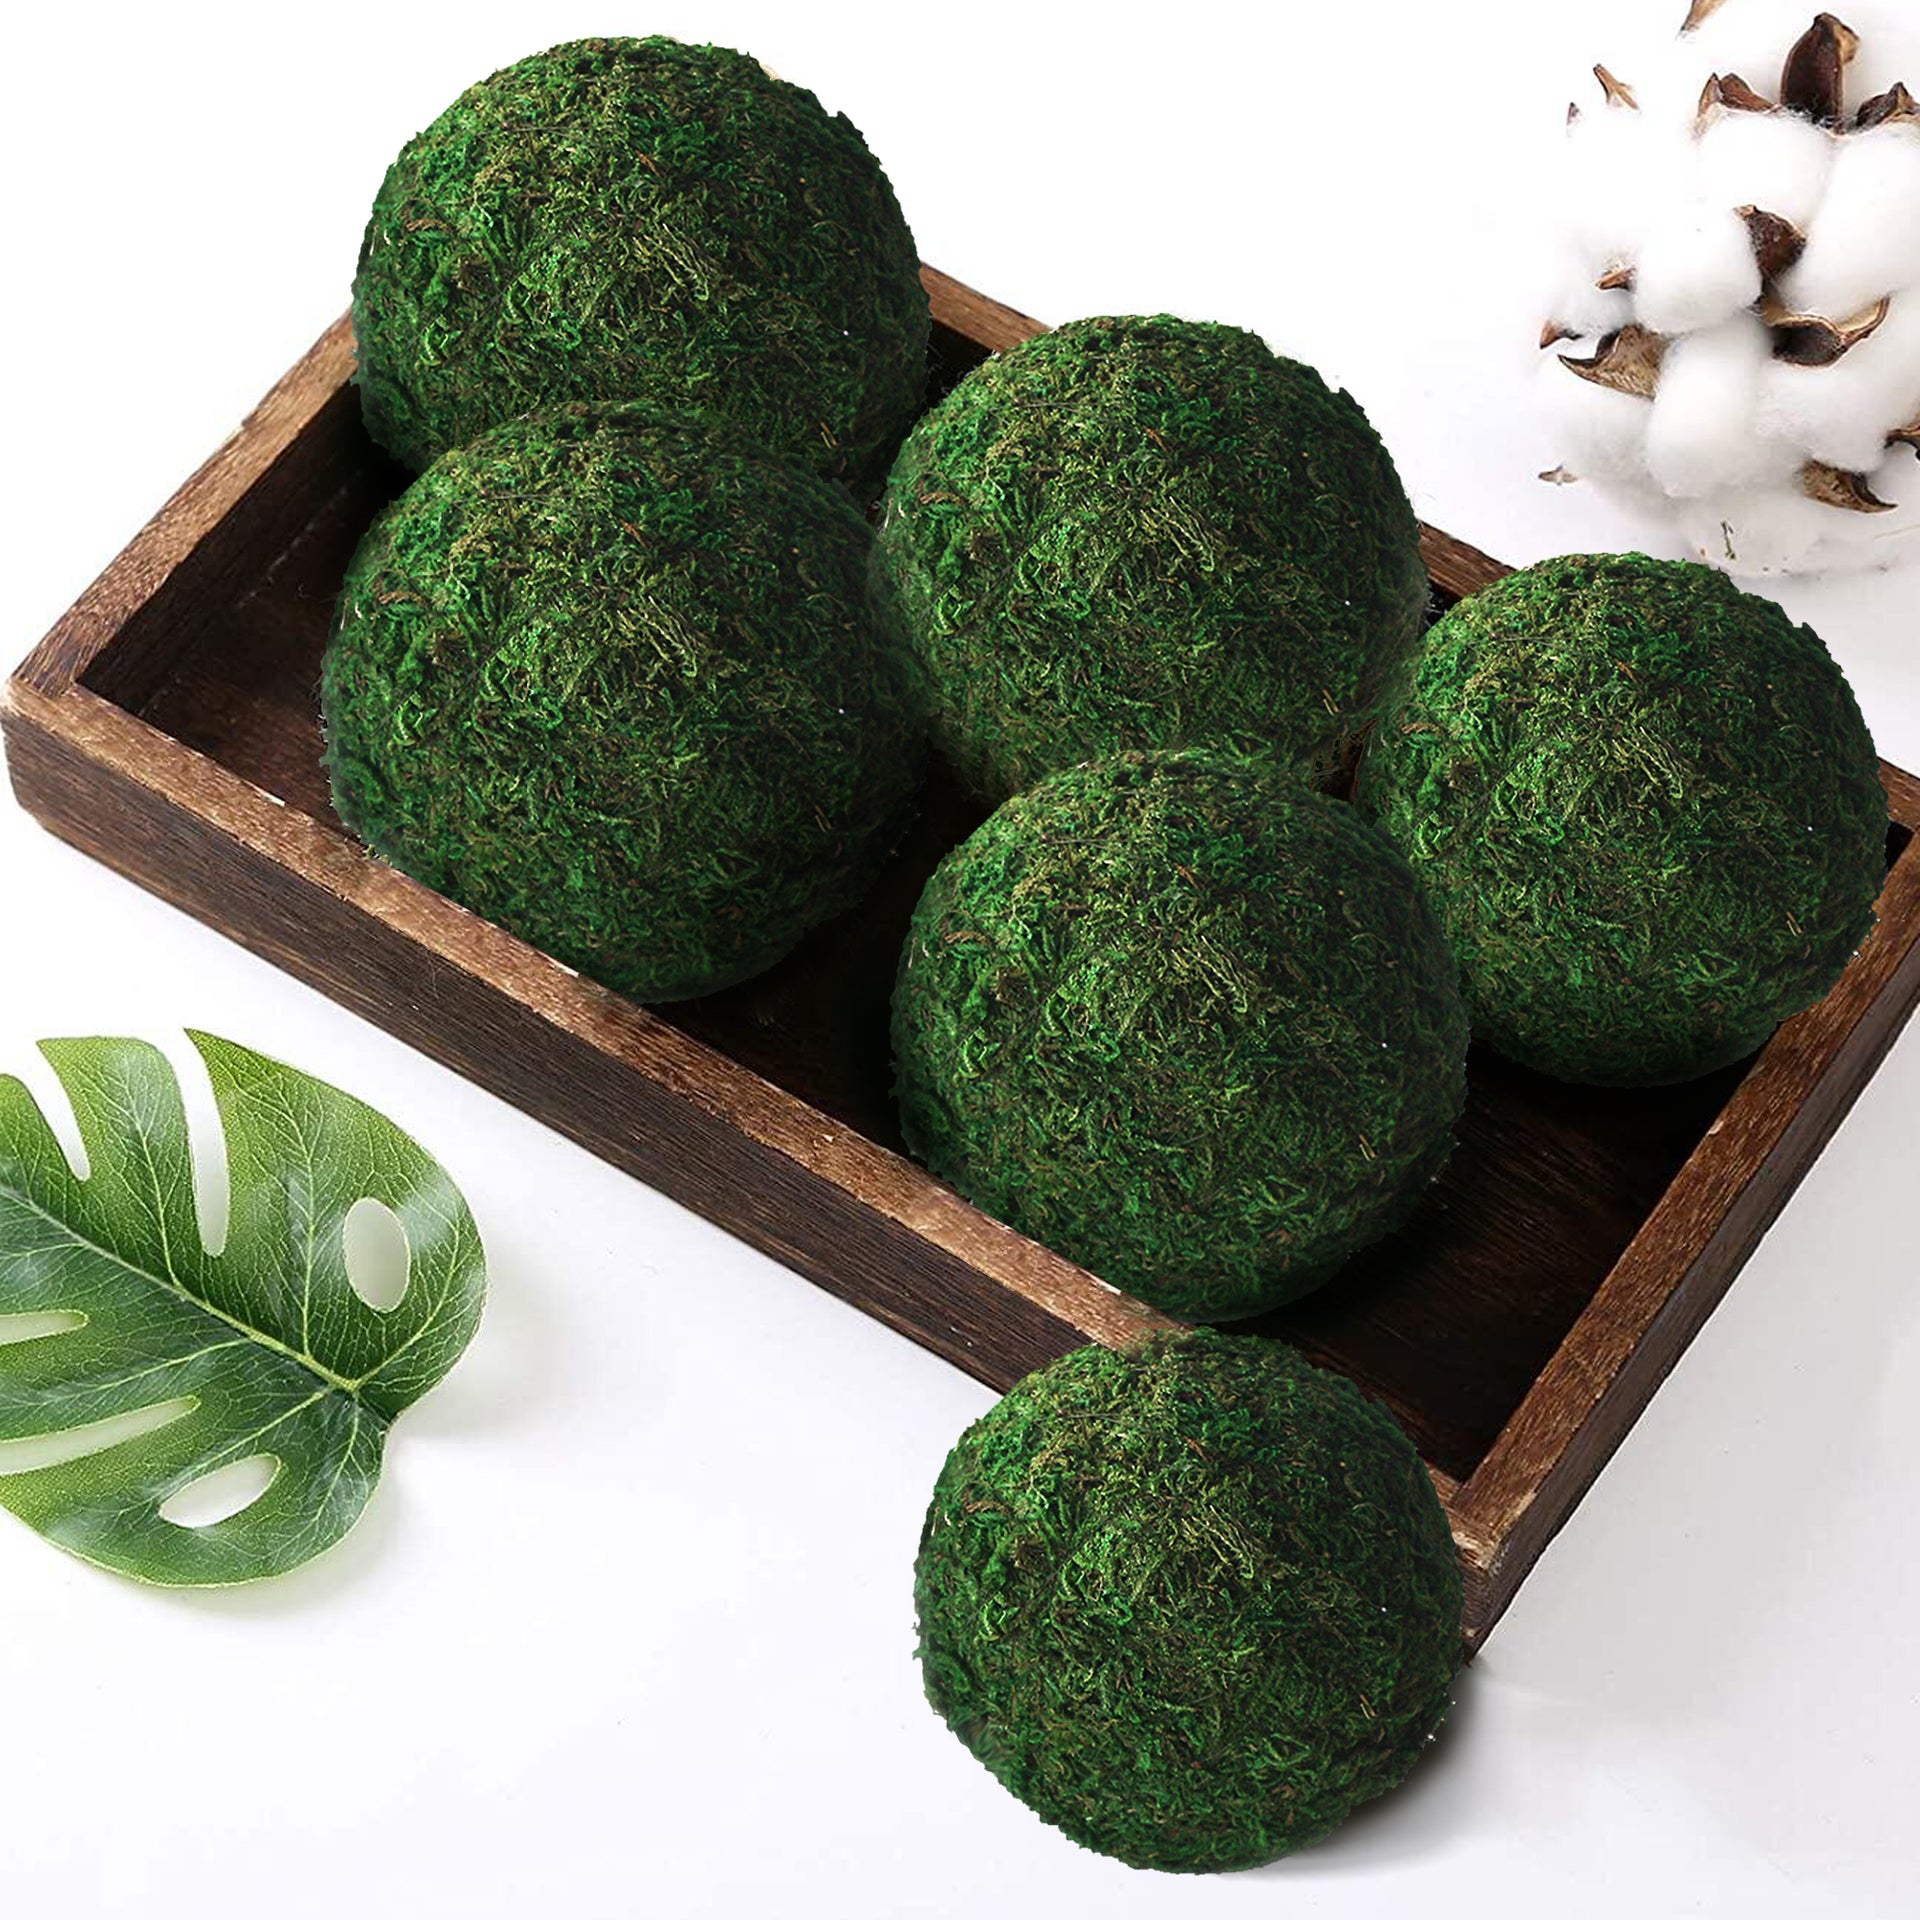 Faux Moss Balls Green 5In - Artificial Moss Balls Decor